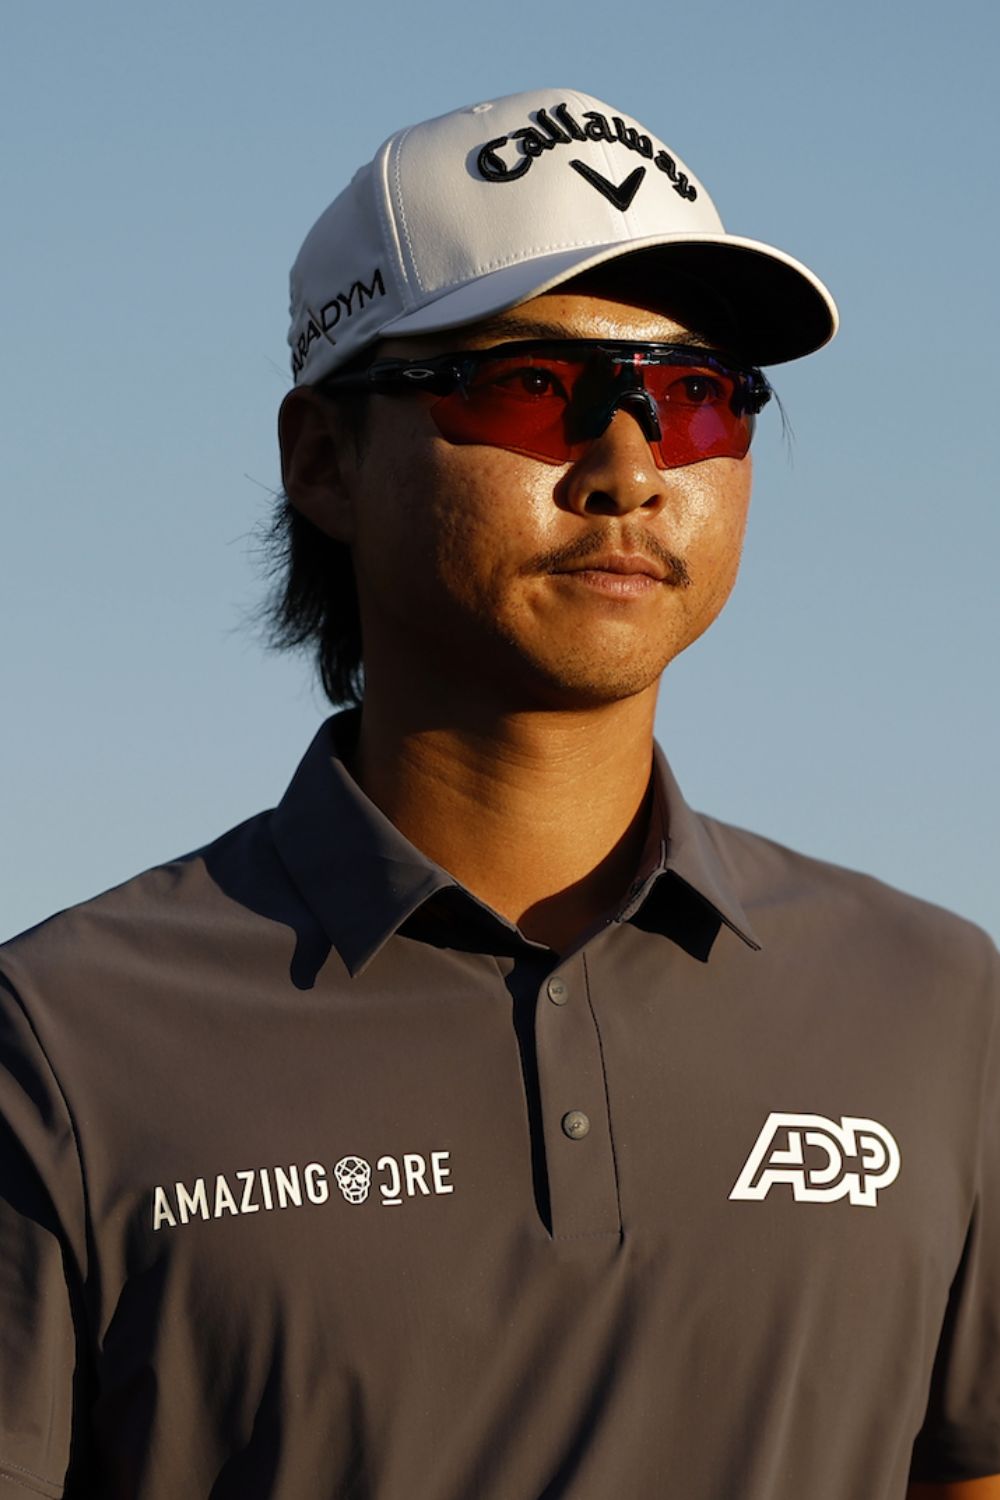 Australian Golfer Min Woo